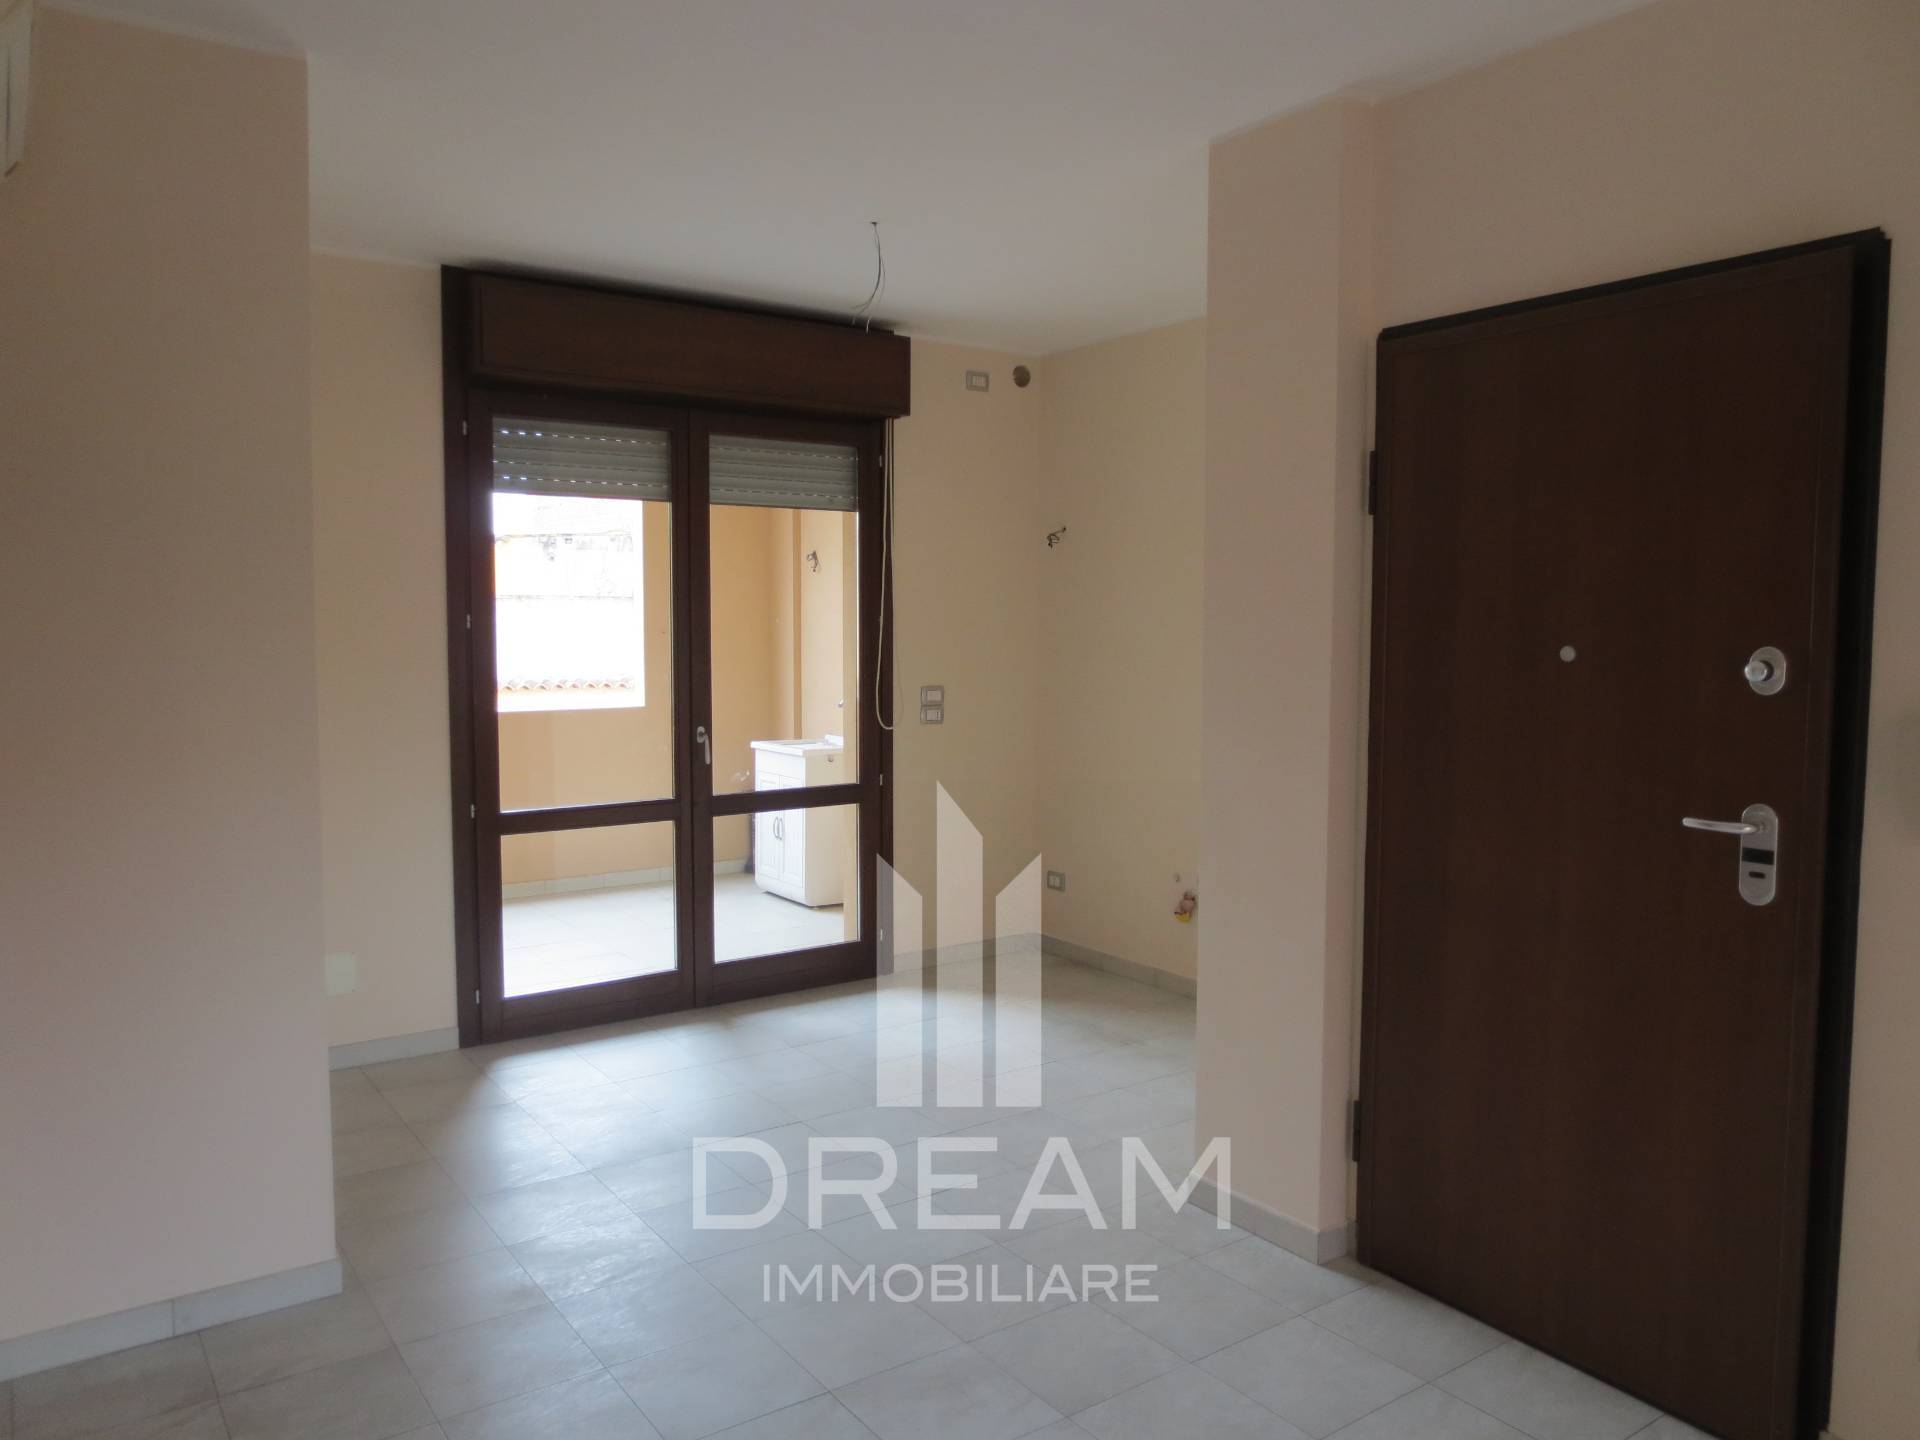 Appartamento in vendita a Quartu Sant'Elena, 3 locali, prezzo € 160.000 | PortaleAgenzieImmobiliari.it